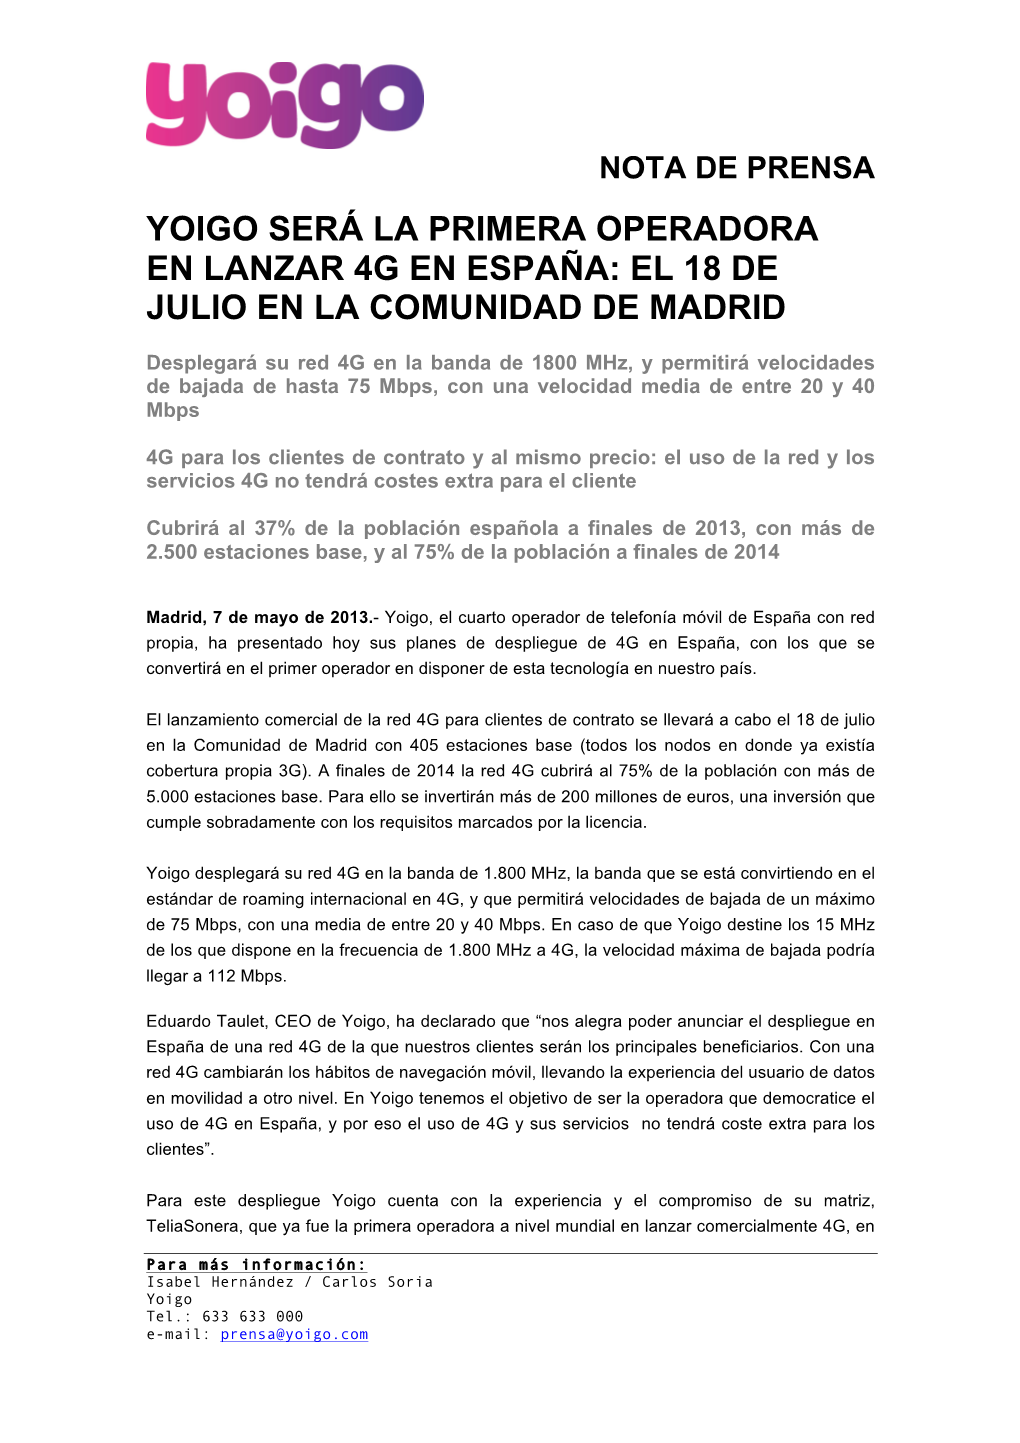 Yoigo Lanzará 4G En España